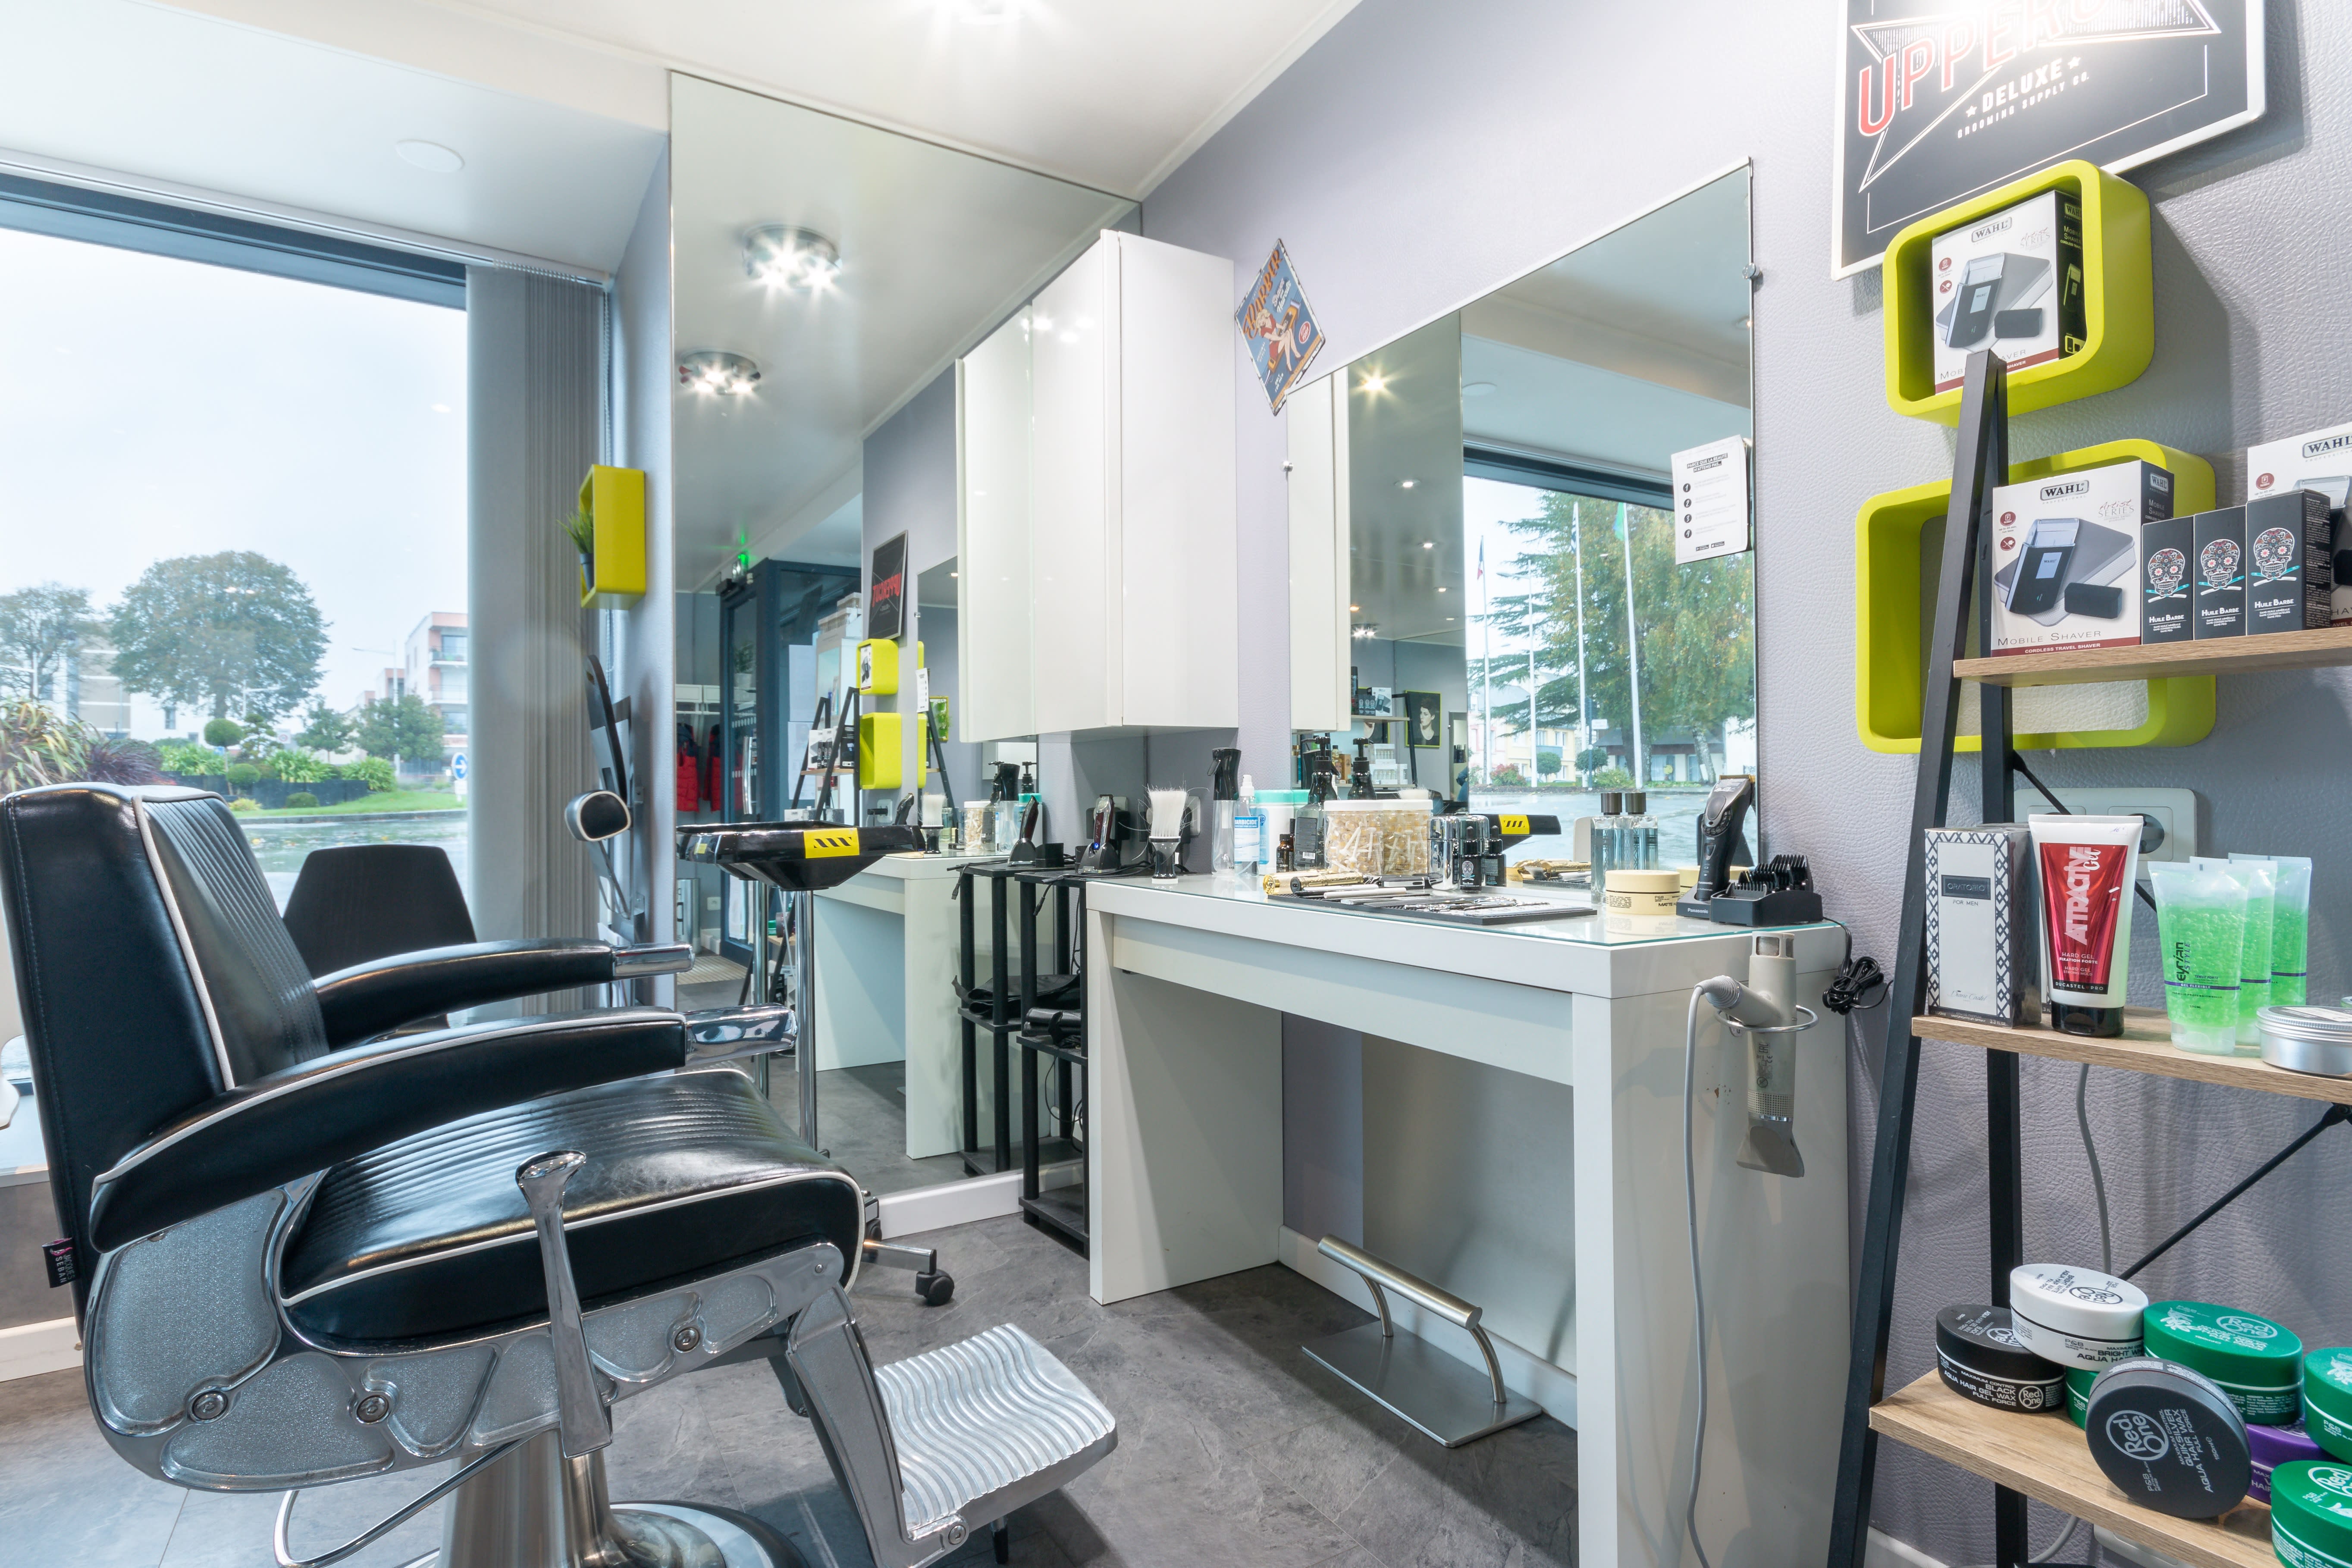 Barber shop, un nouveau salon de coiffure-barbier s'installe à Loudéac